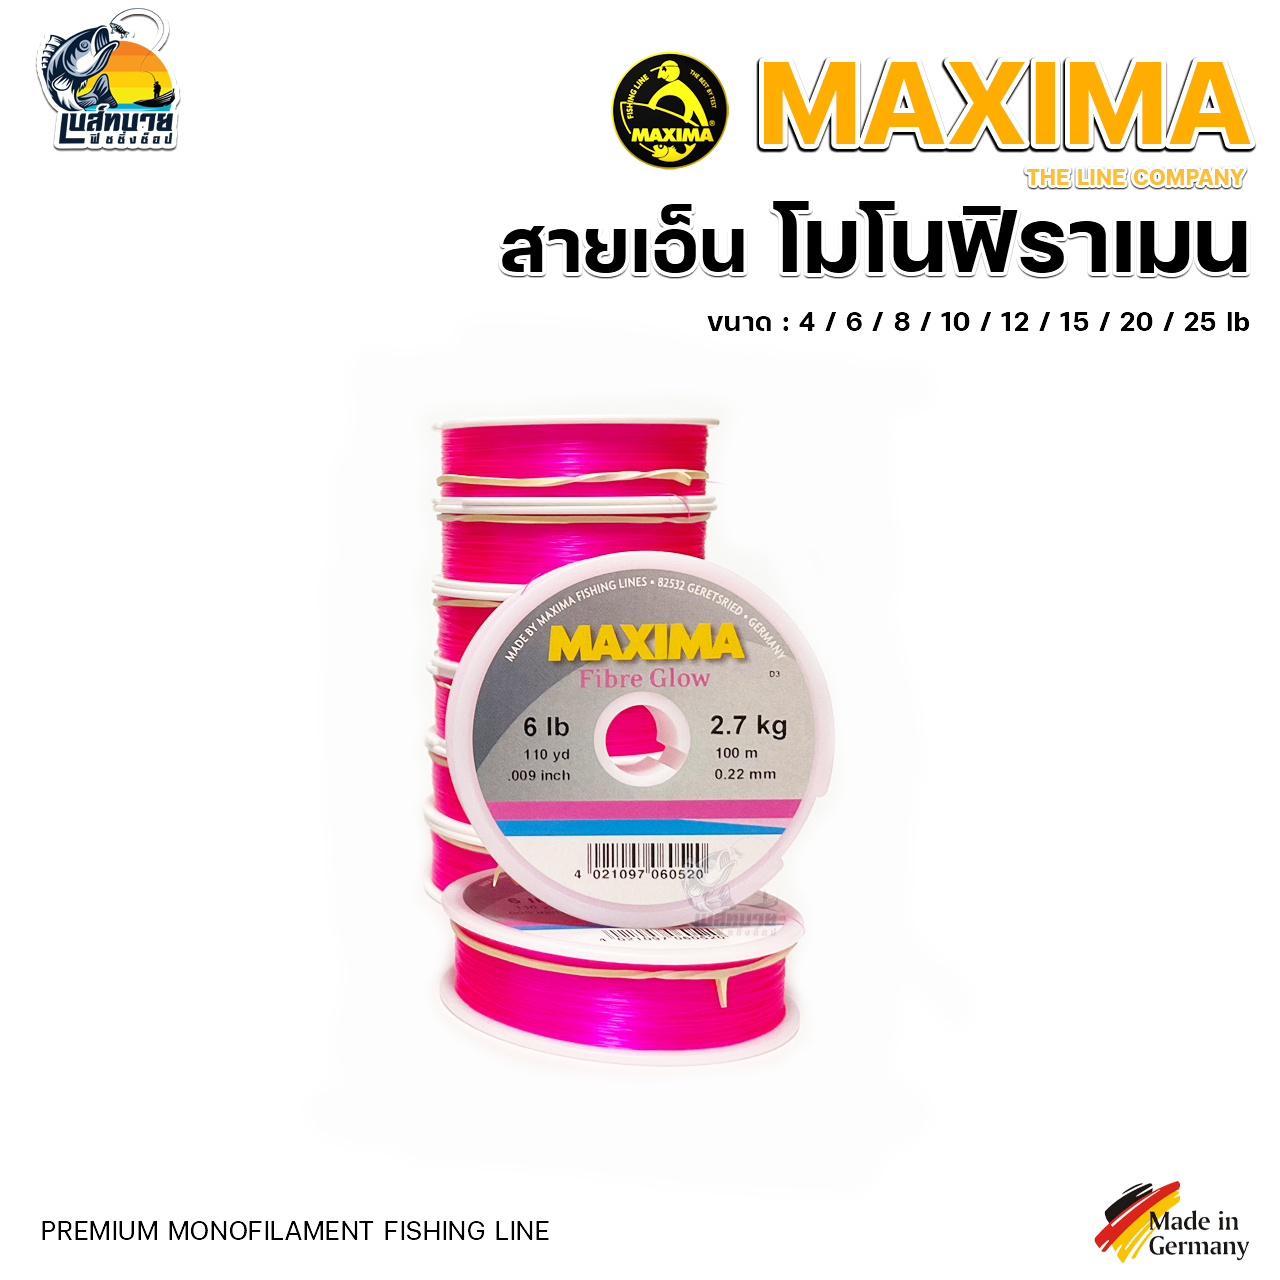 MAXIMA Chameleon/Fiber Glow สายเอ็นแม็กซิม่า สีน้ำตาล/ชมพู ขนาด 2